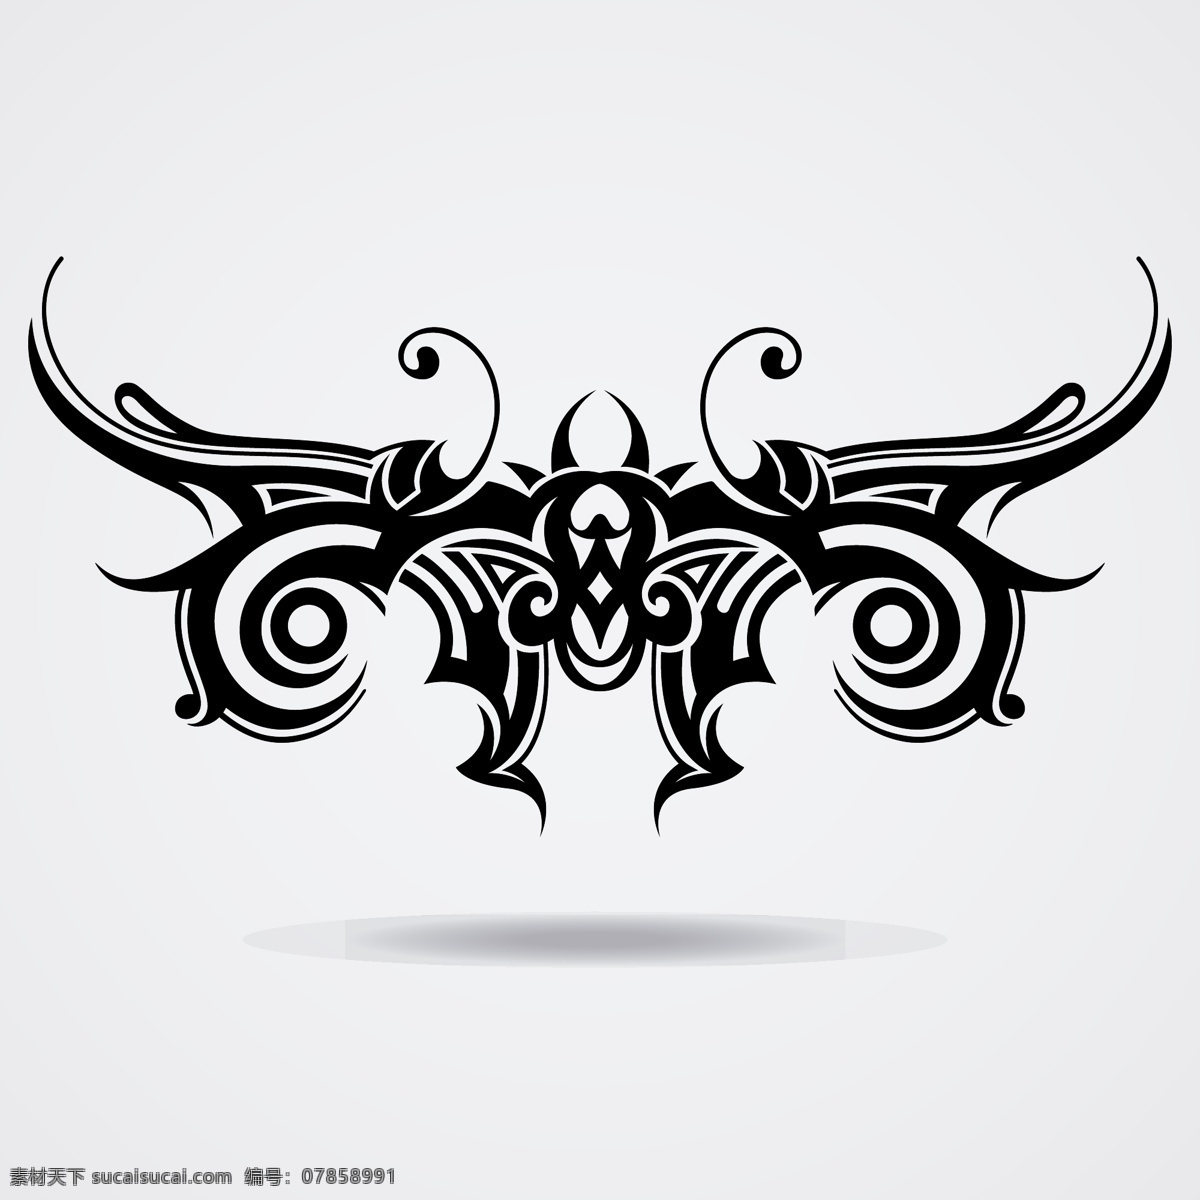 部落艺术纹身 抽象的 翅膀 向量 集合 抽象 边框 饰品 模板 艺术 纹身 黑色 最新矢量素材 白色